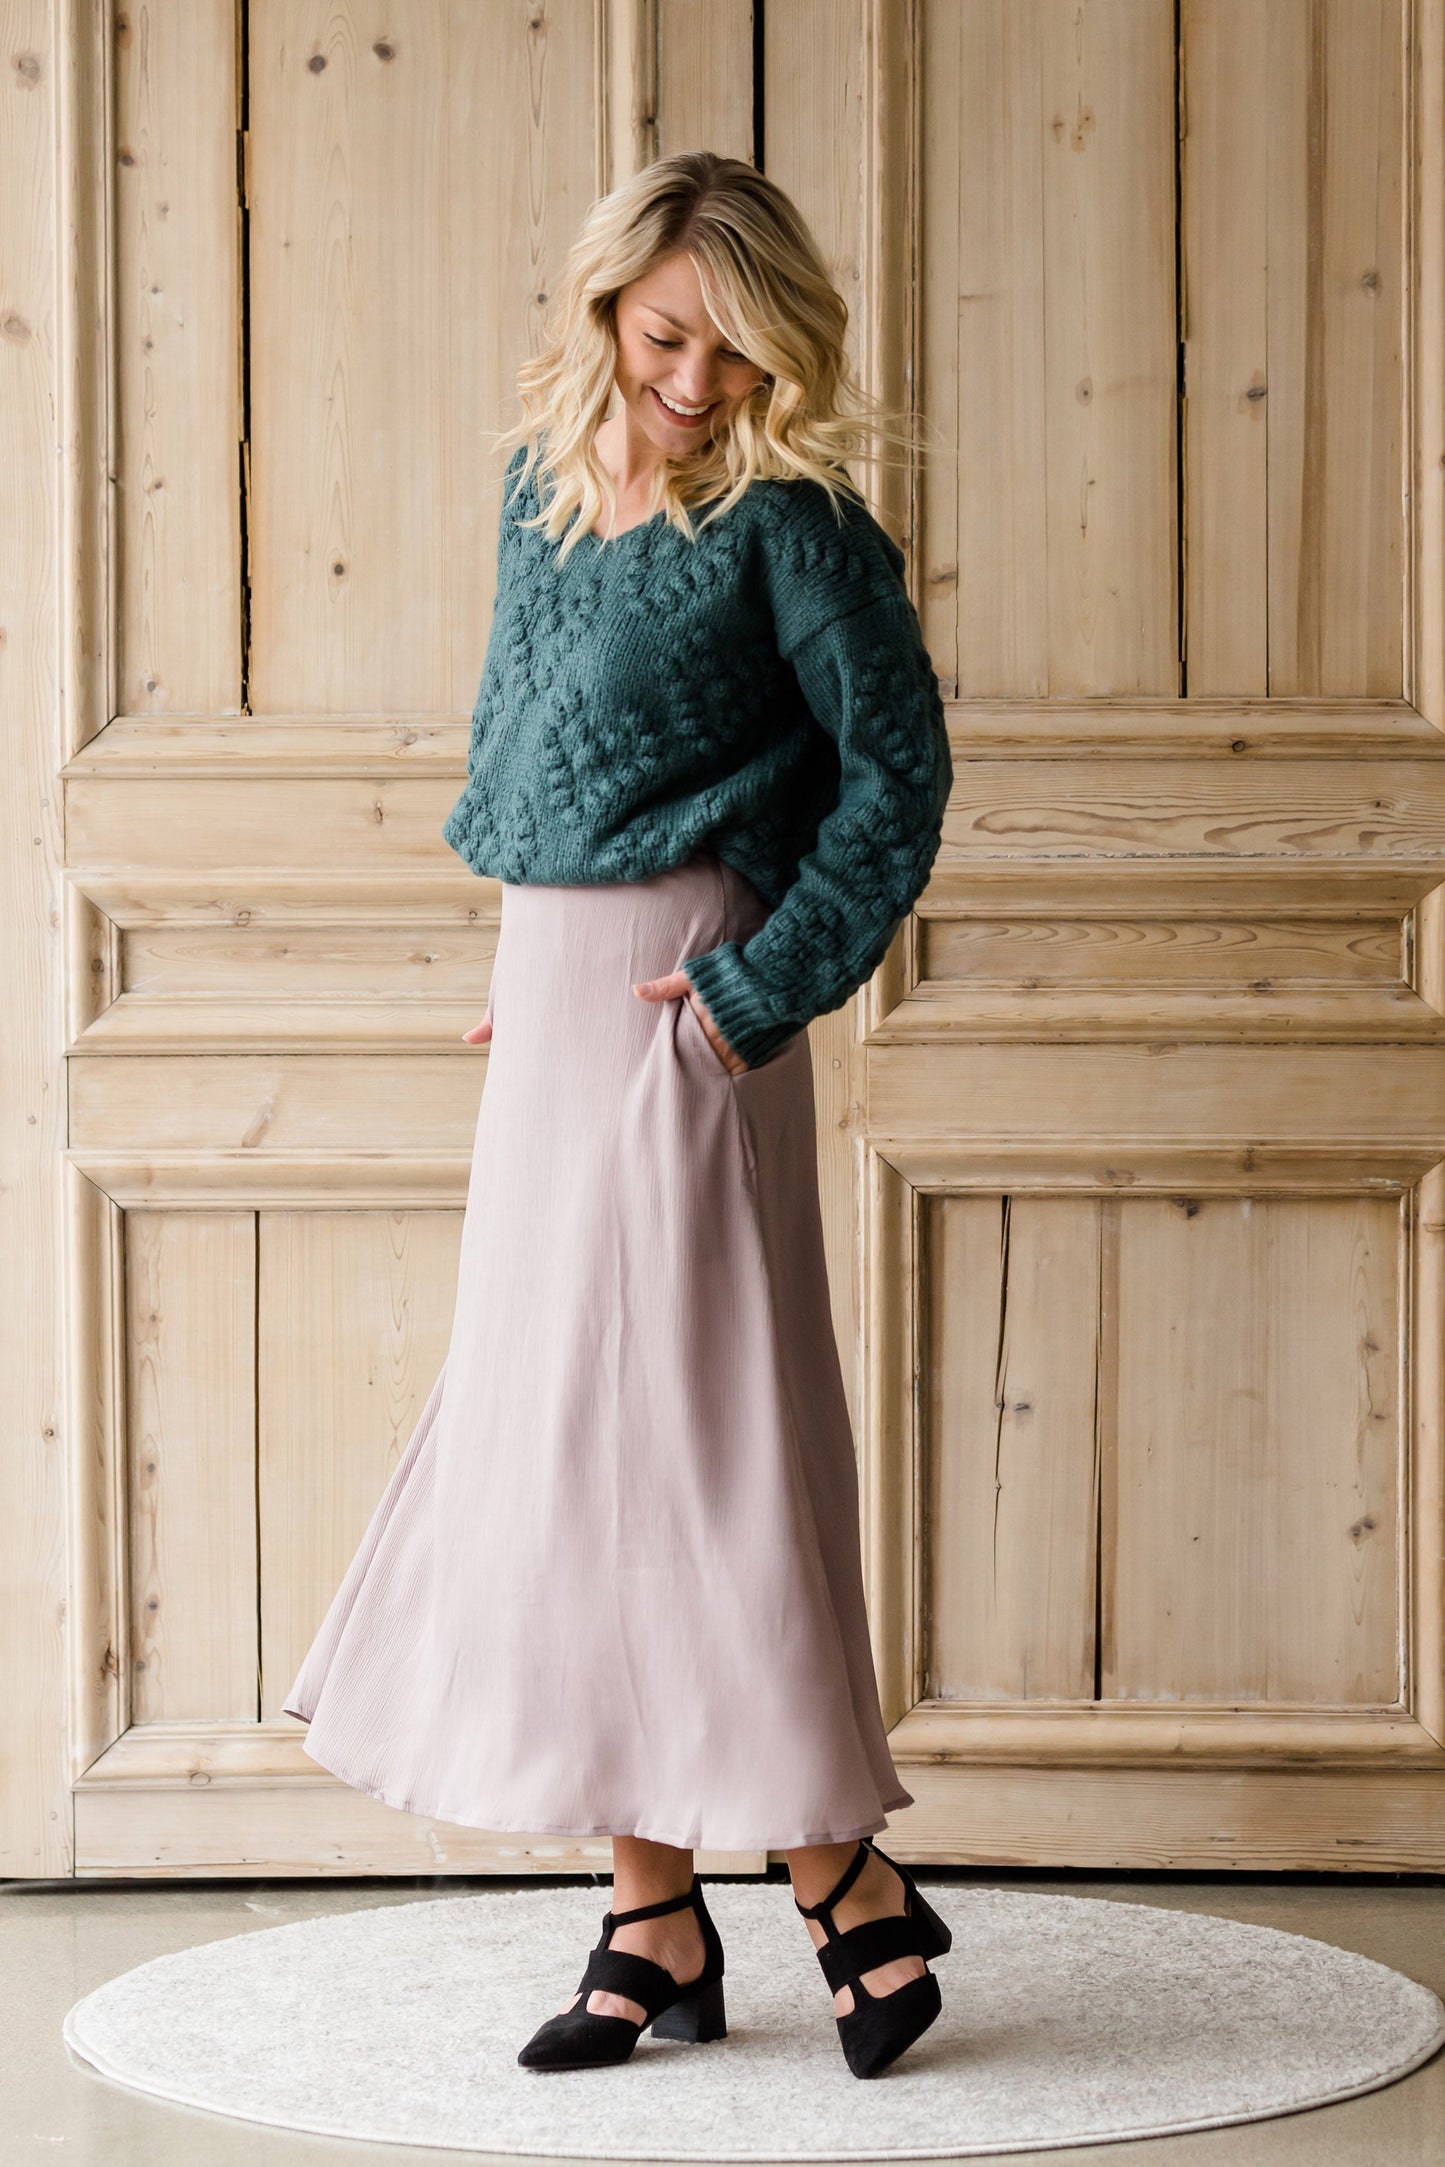 Textured Woven A-Line Skirt - FINAL SALE Skirts